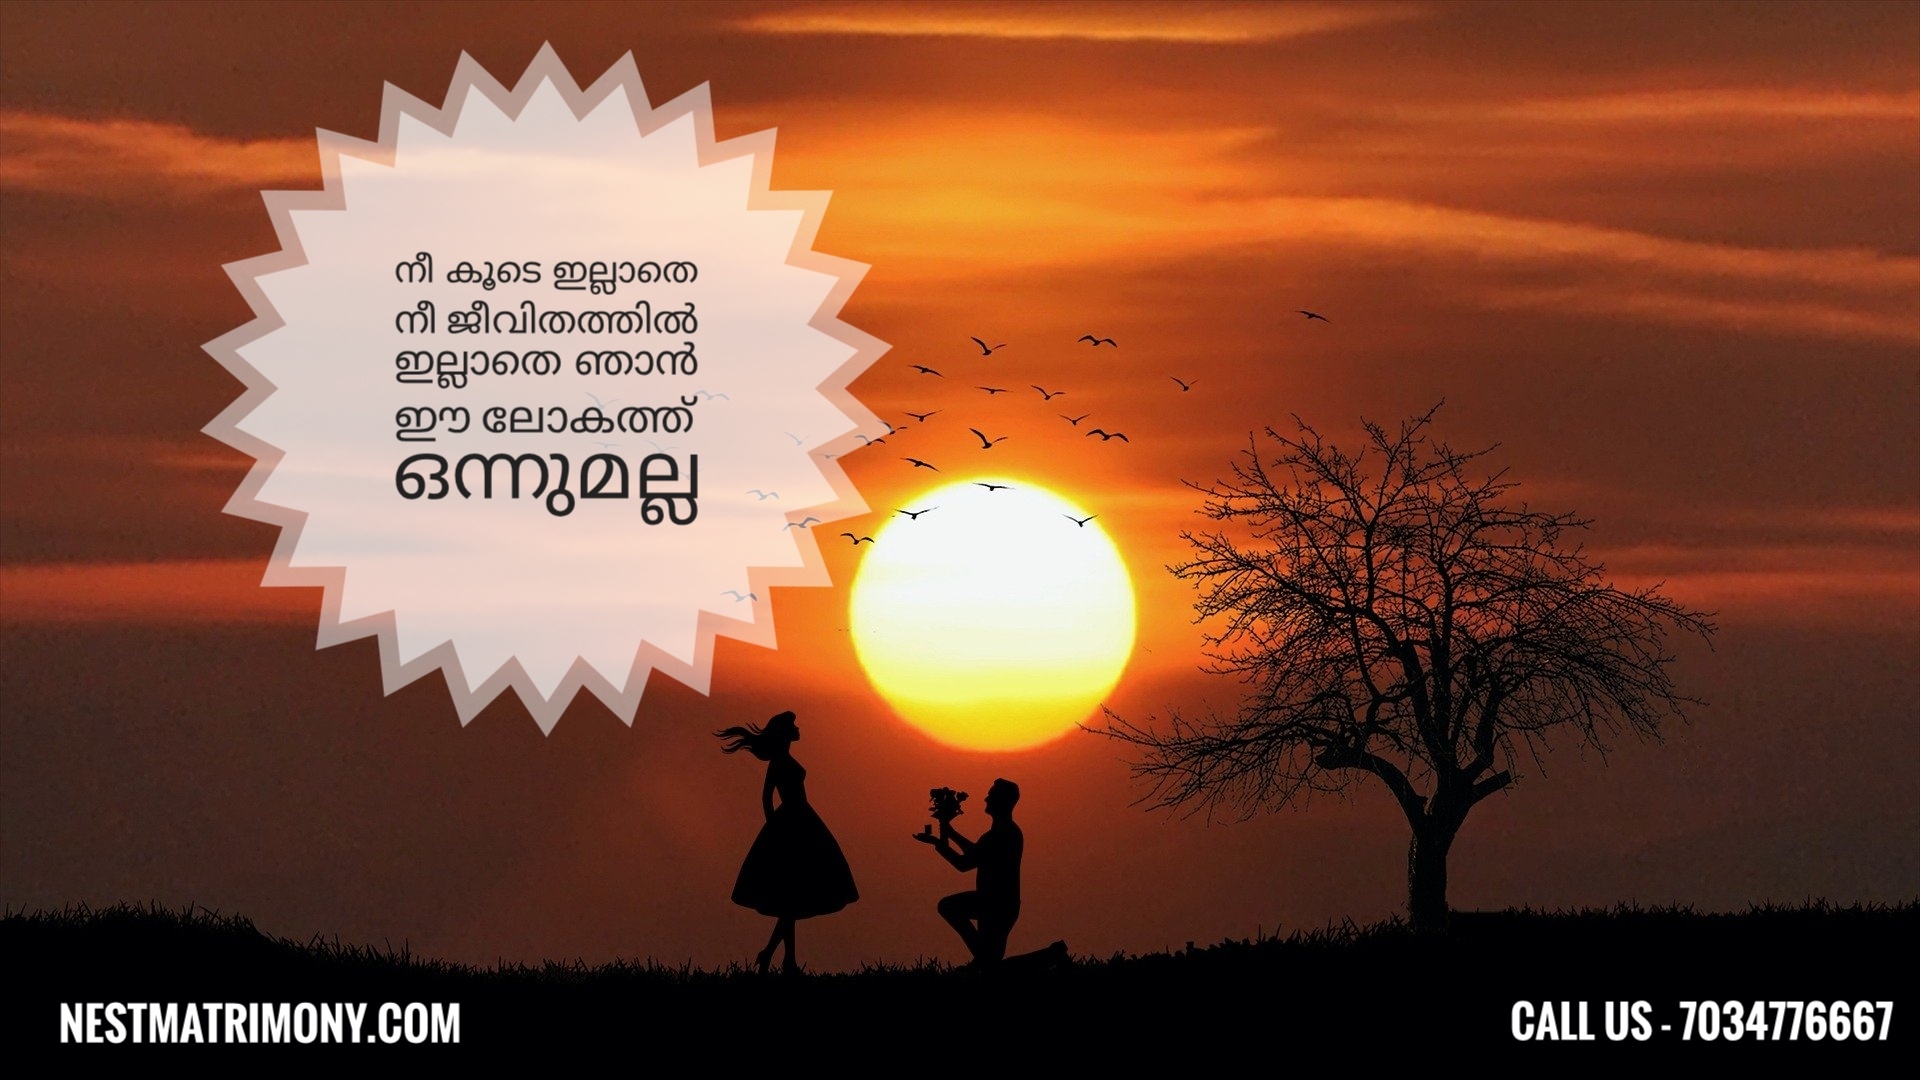 Malayalam Love Quotes, 19-06-2020 - Nestmatrimony Blog